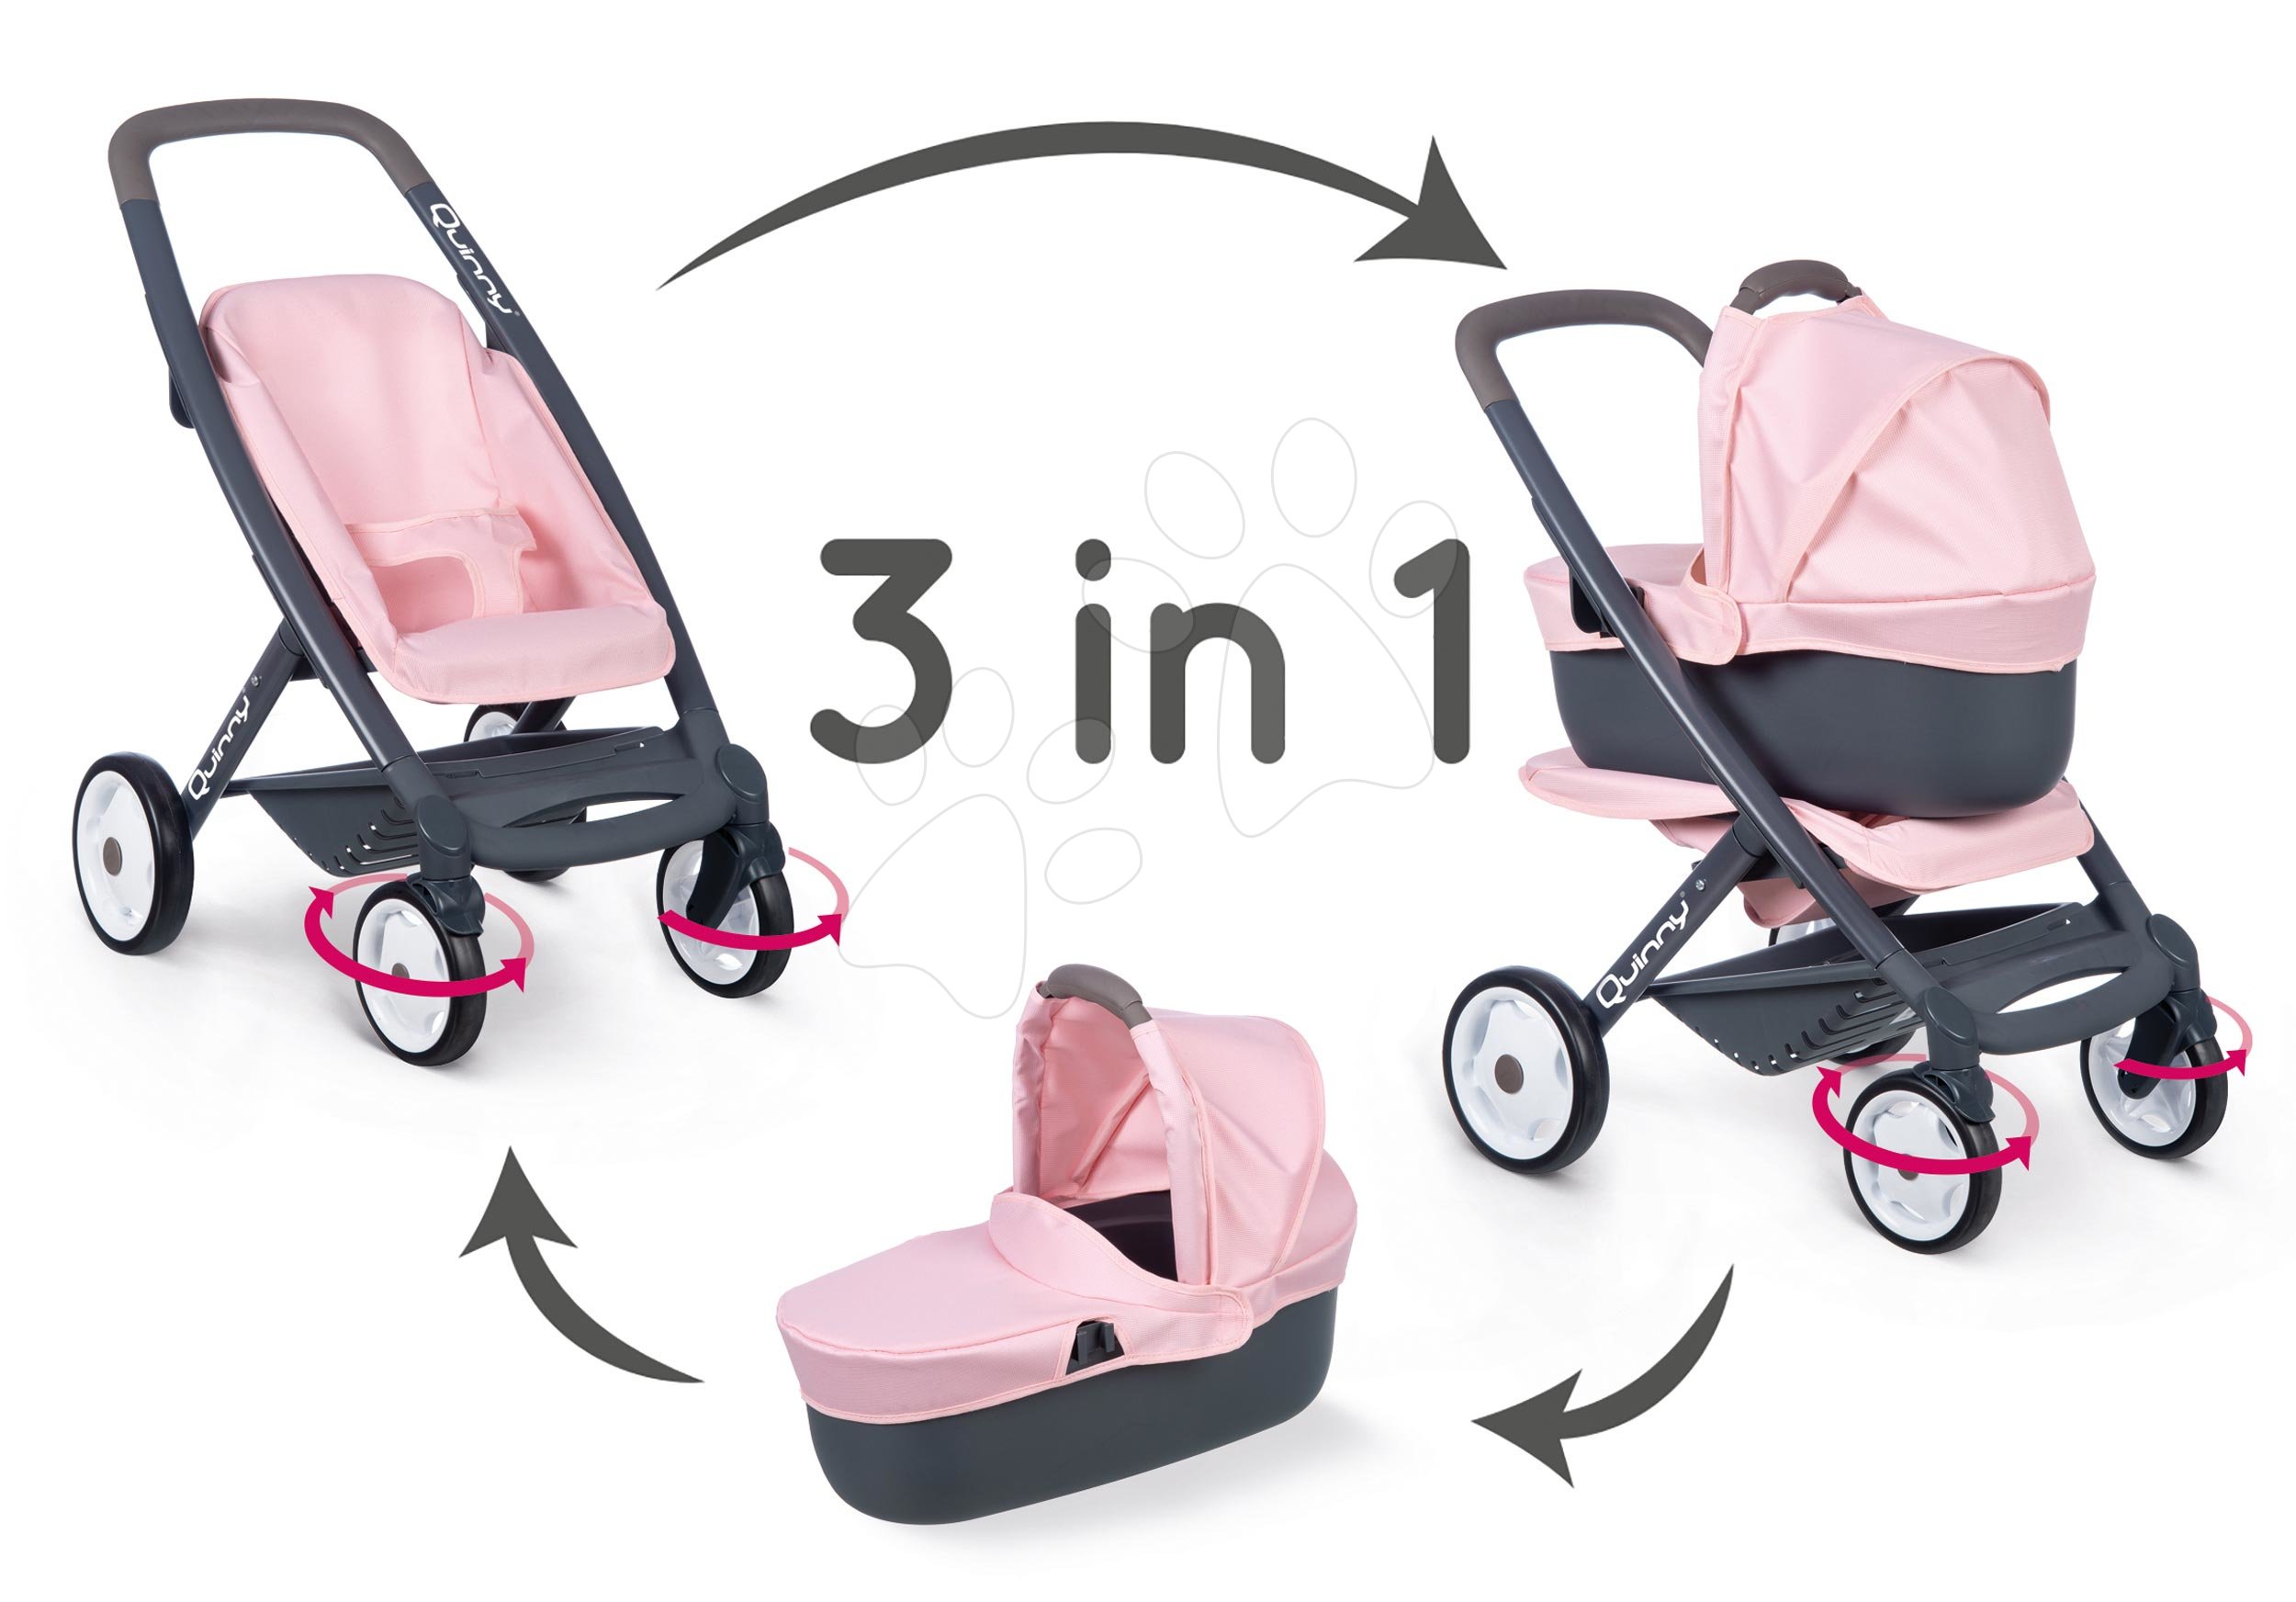 Kočíky od 18 mesiacov - Kočík trojkombinácia Powder Pink 3in1 Maxi Cosi&Quinny Smoby hlboký a športový a prenosná postieľka pre 42 cm bábiku